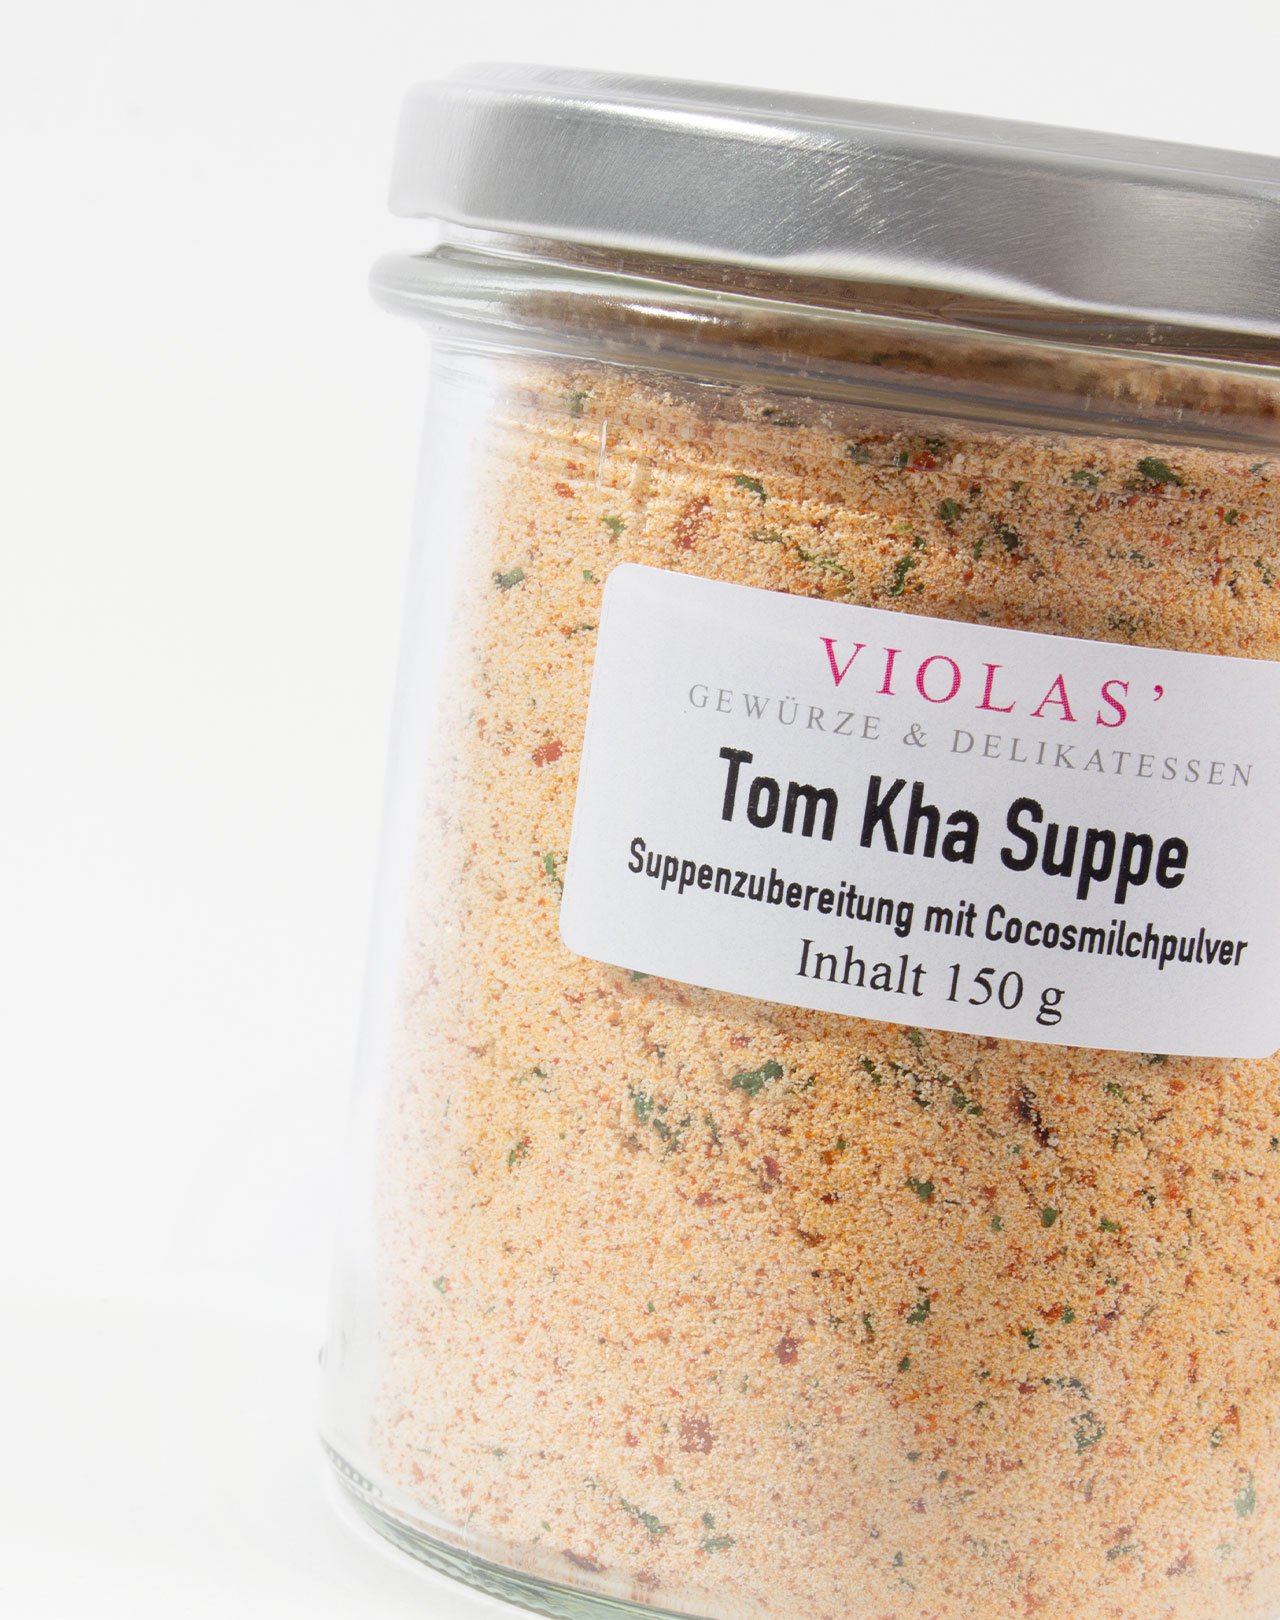 Tom Kha Suppe